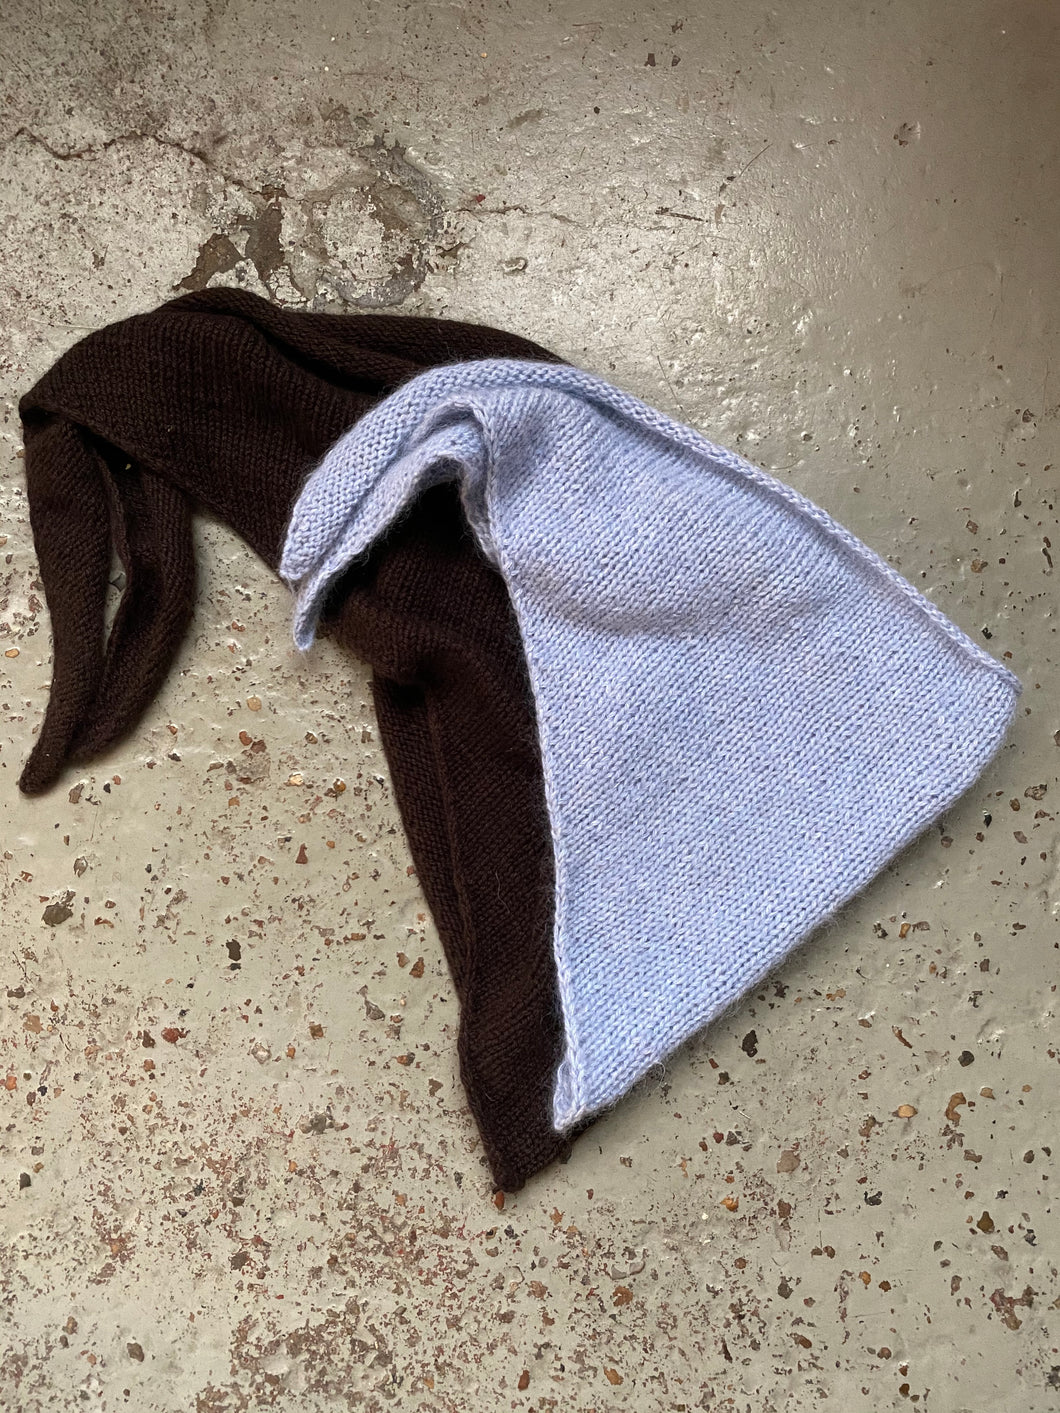 Deima's bandana - knitting pattern (english)